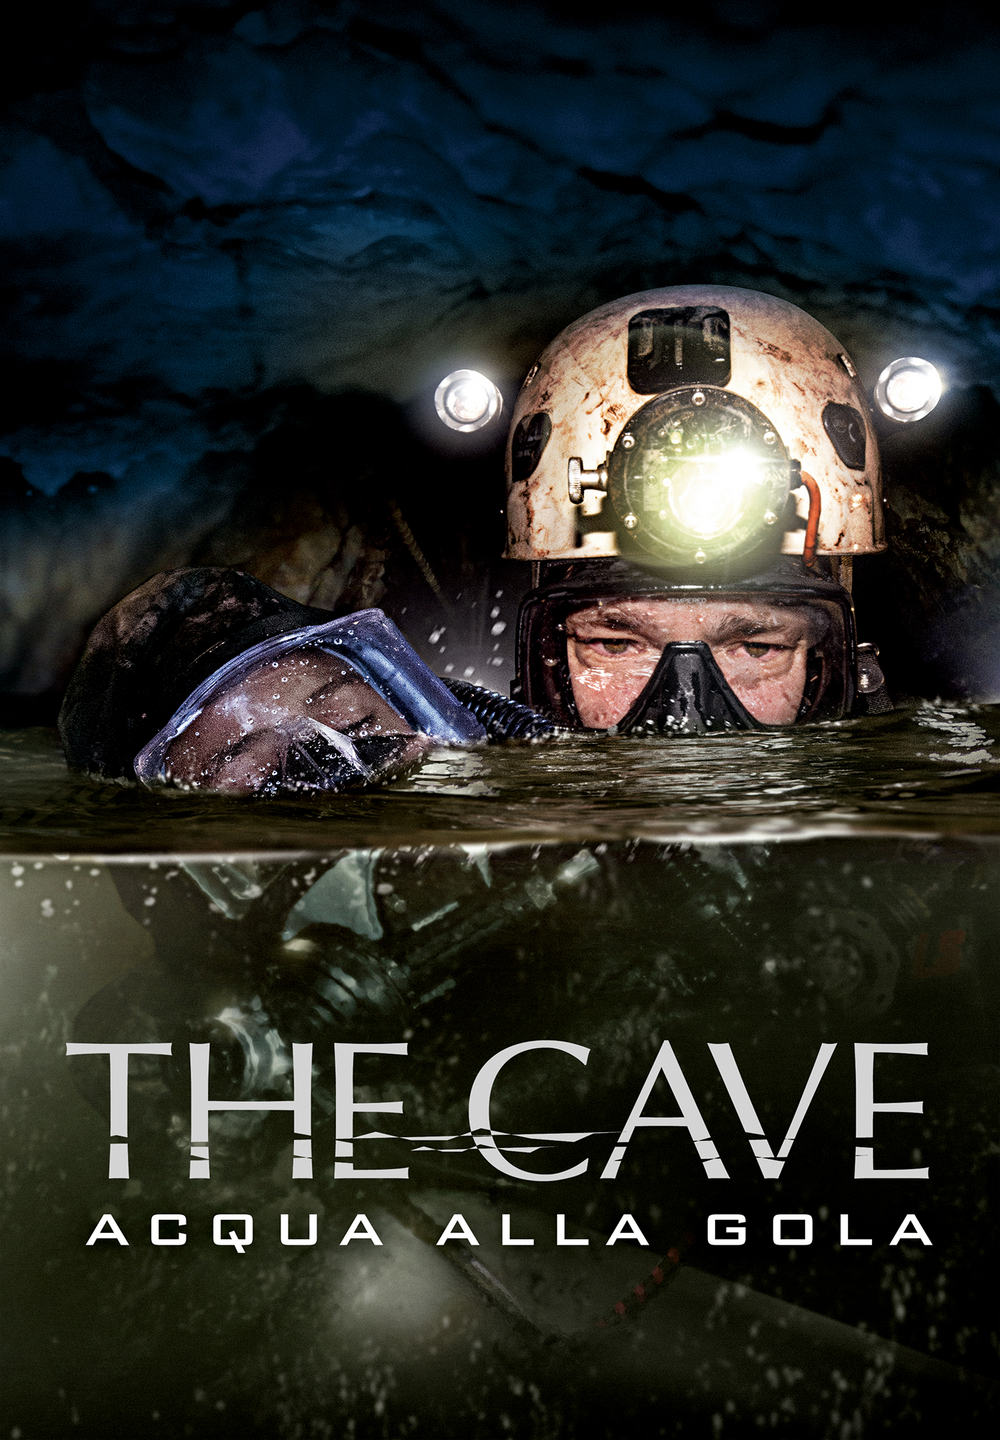 The Cave – Acqua alla gola [HD] (2019)